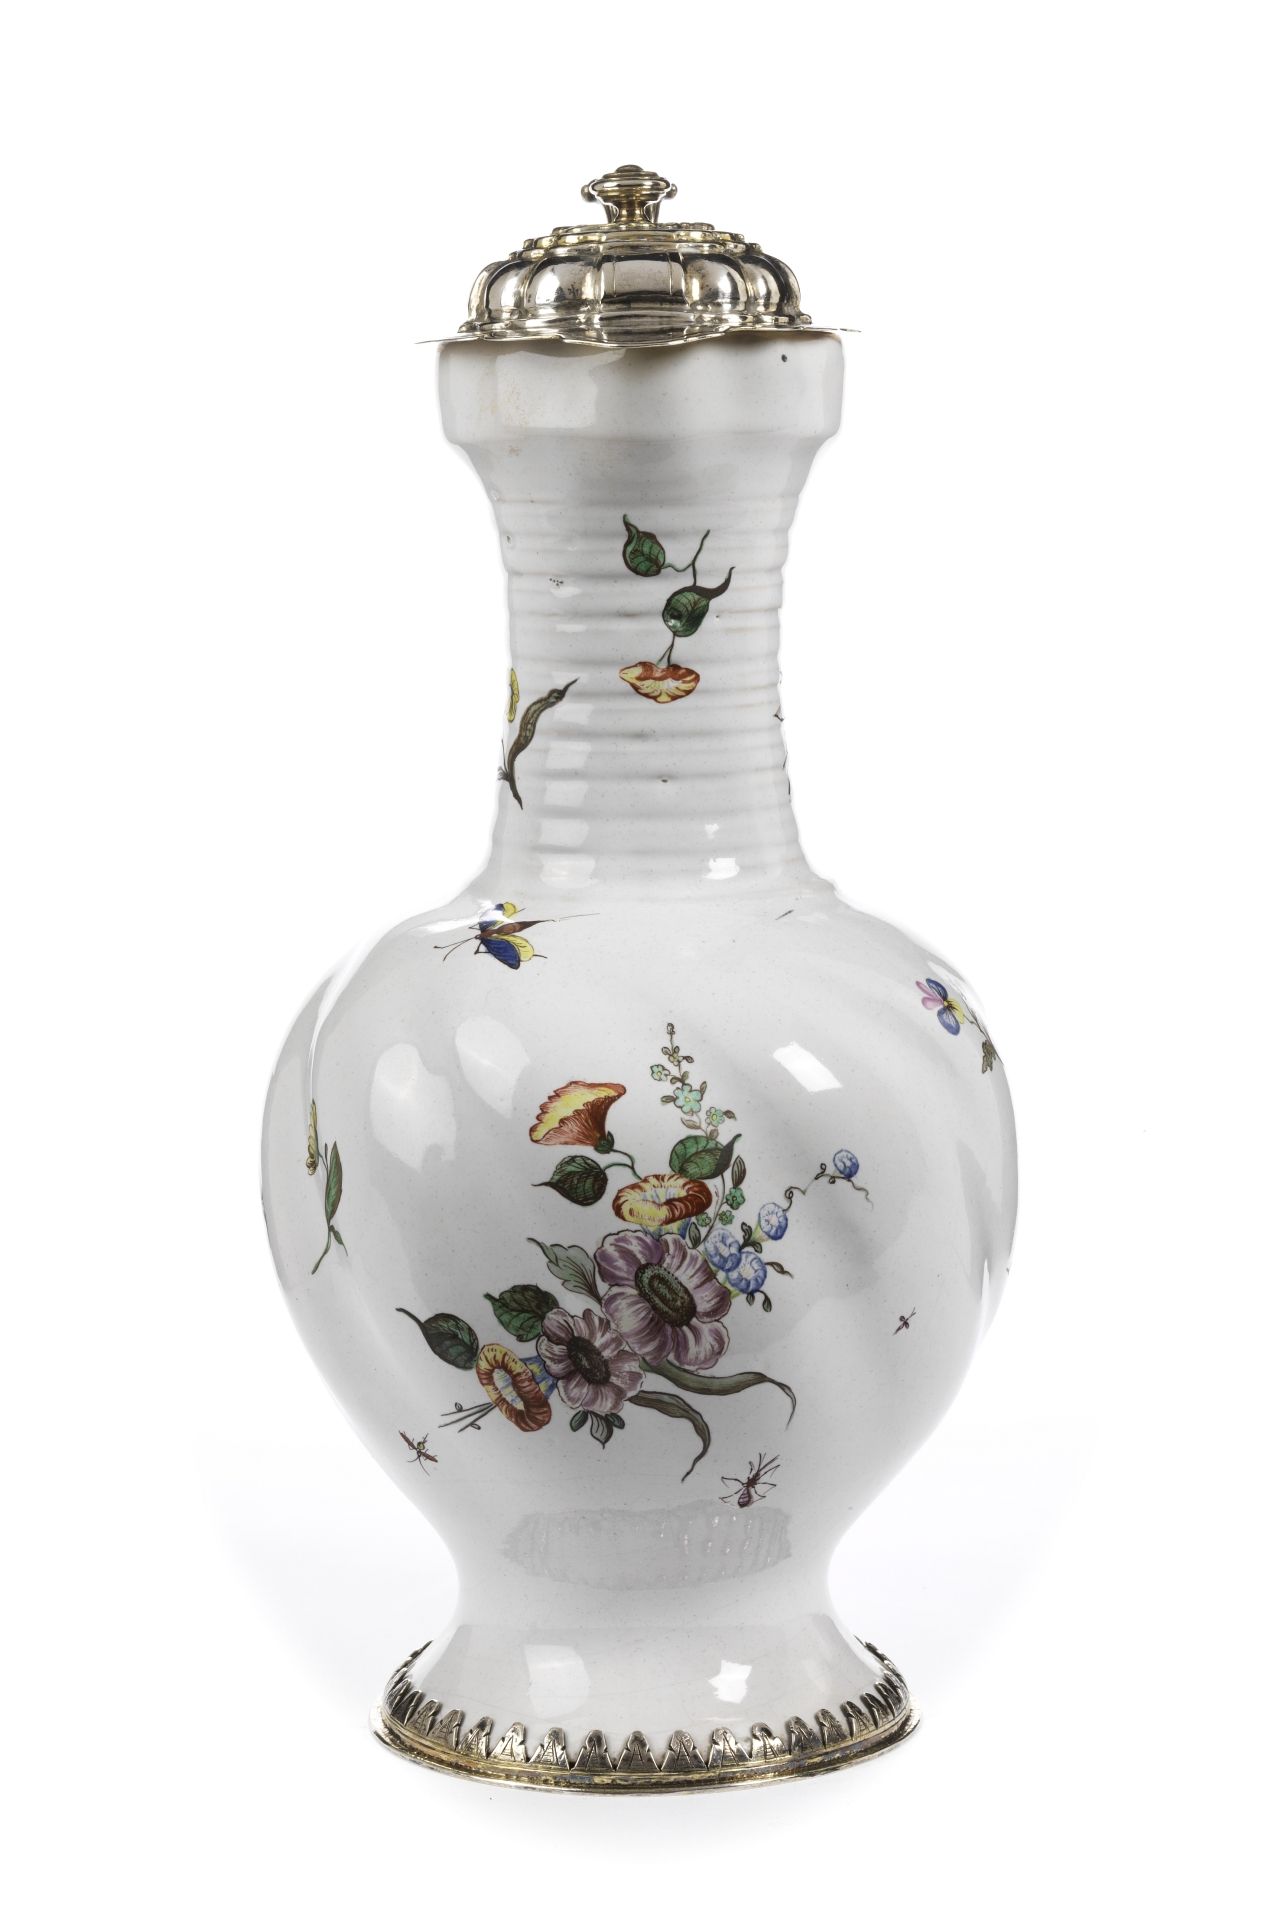 german-faience-schrezheim-hausmaler-jug-18th-century-flowers